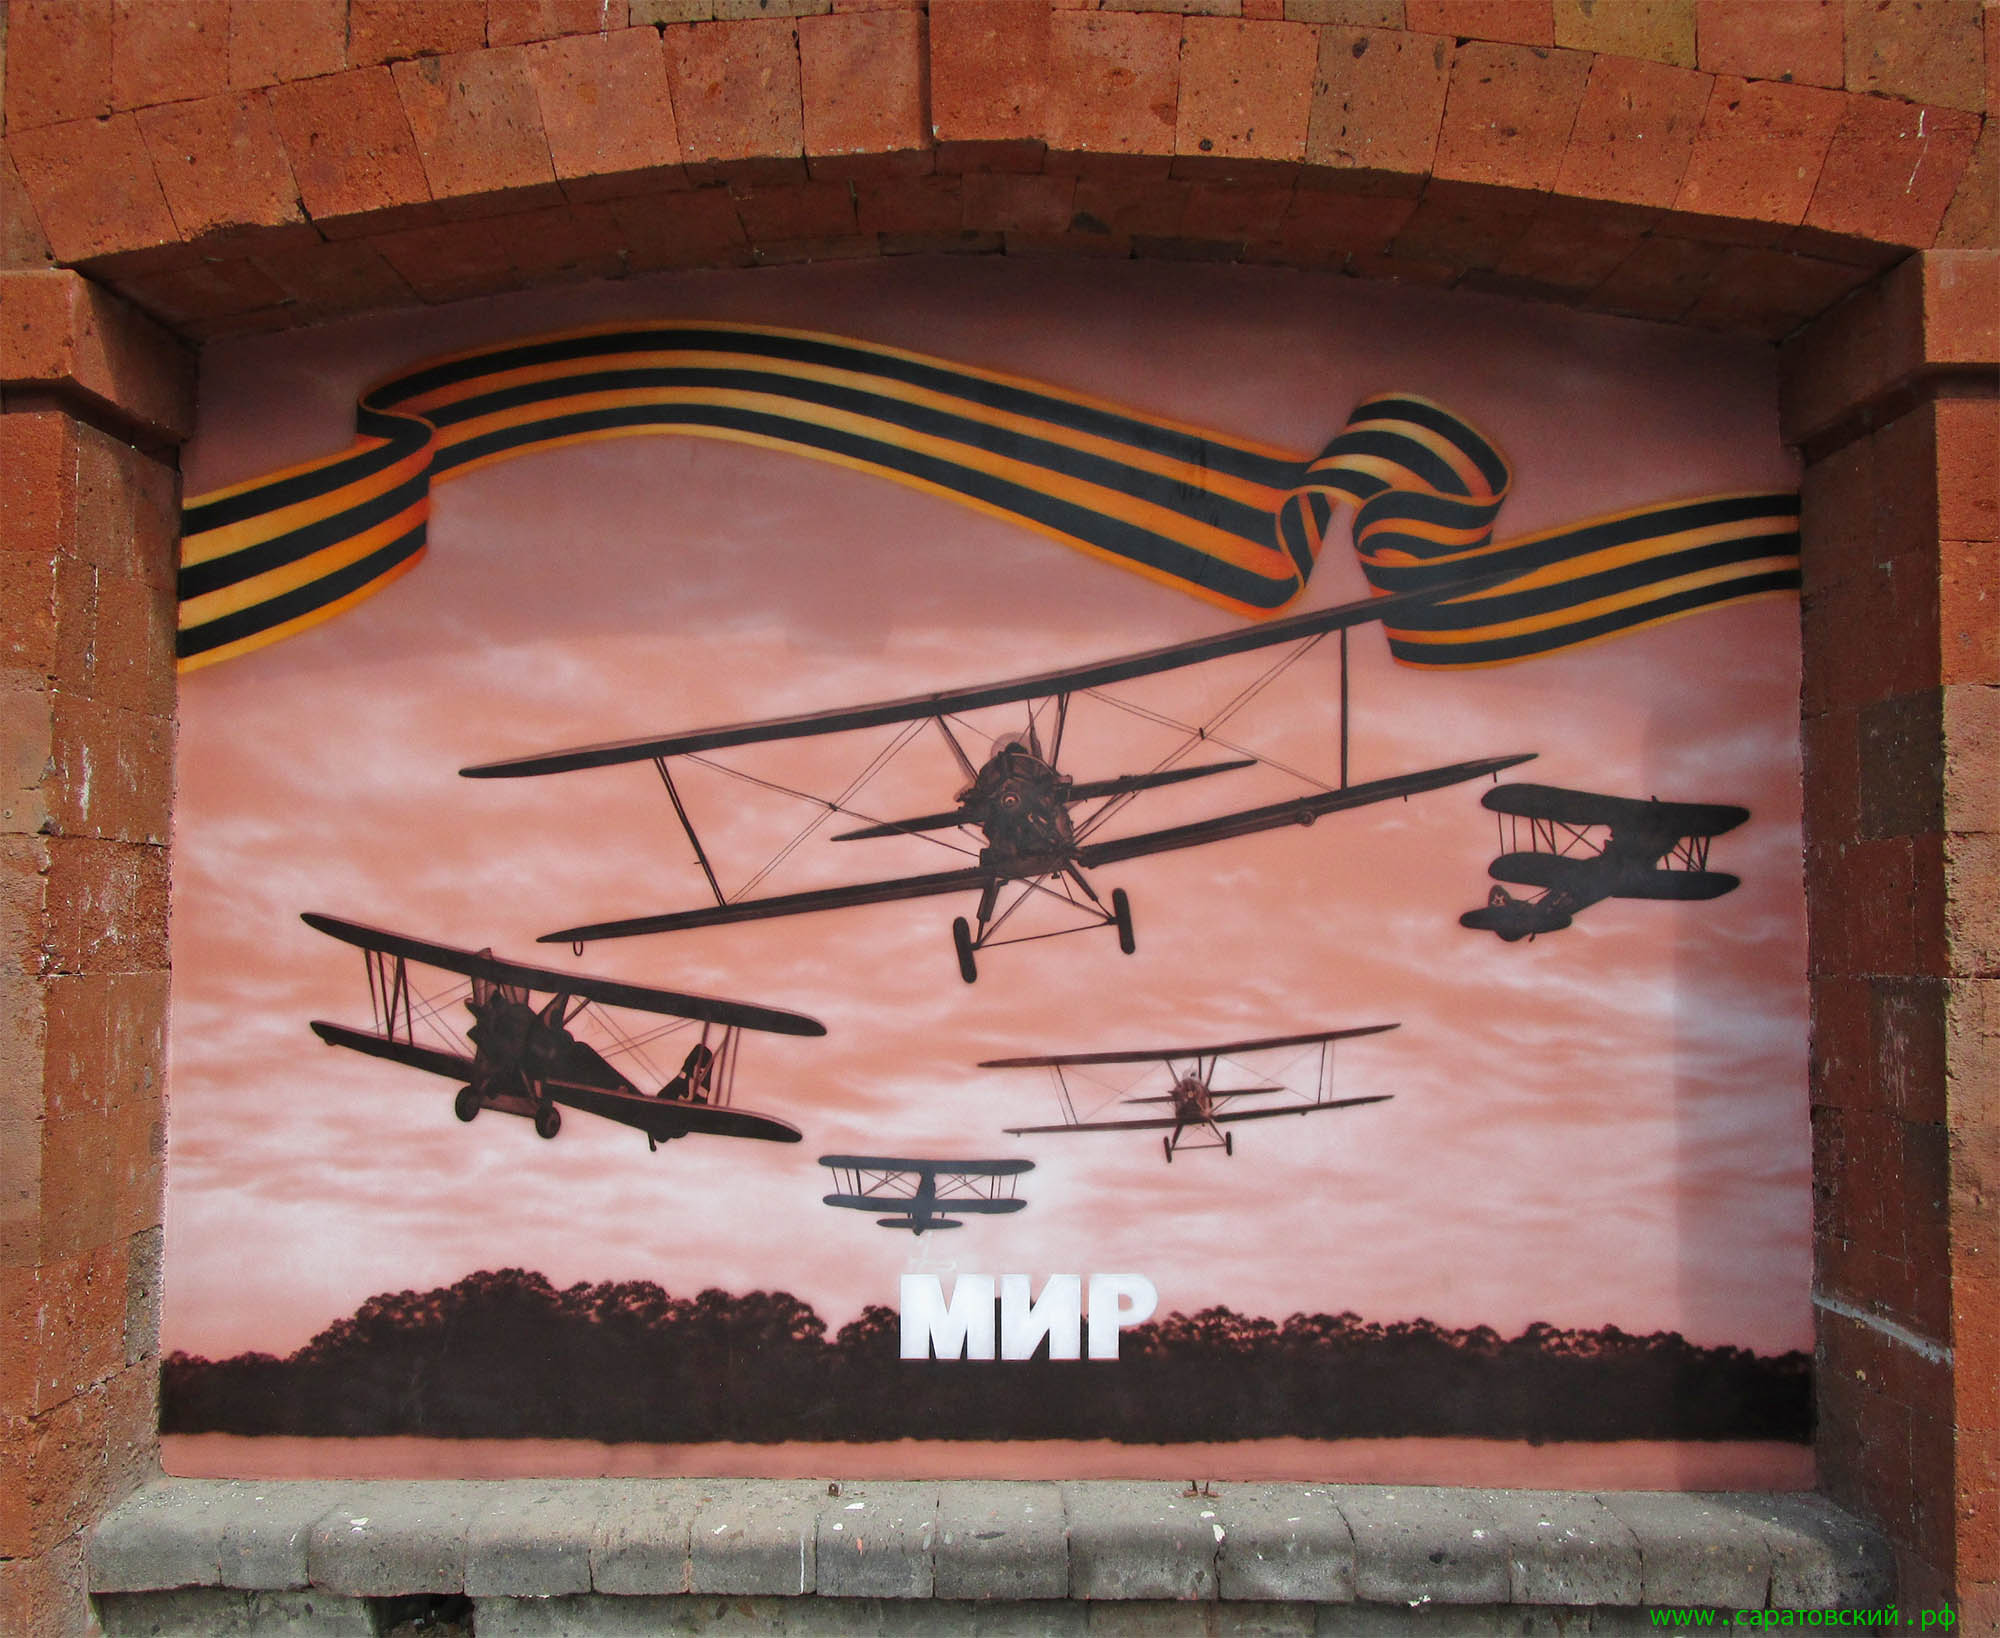 Саратовская набережная, граффити: боевые самолёты в мирном небе